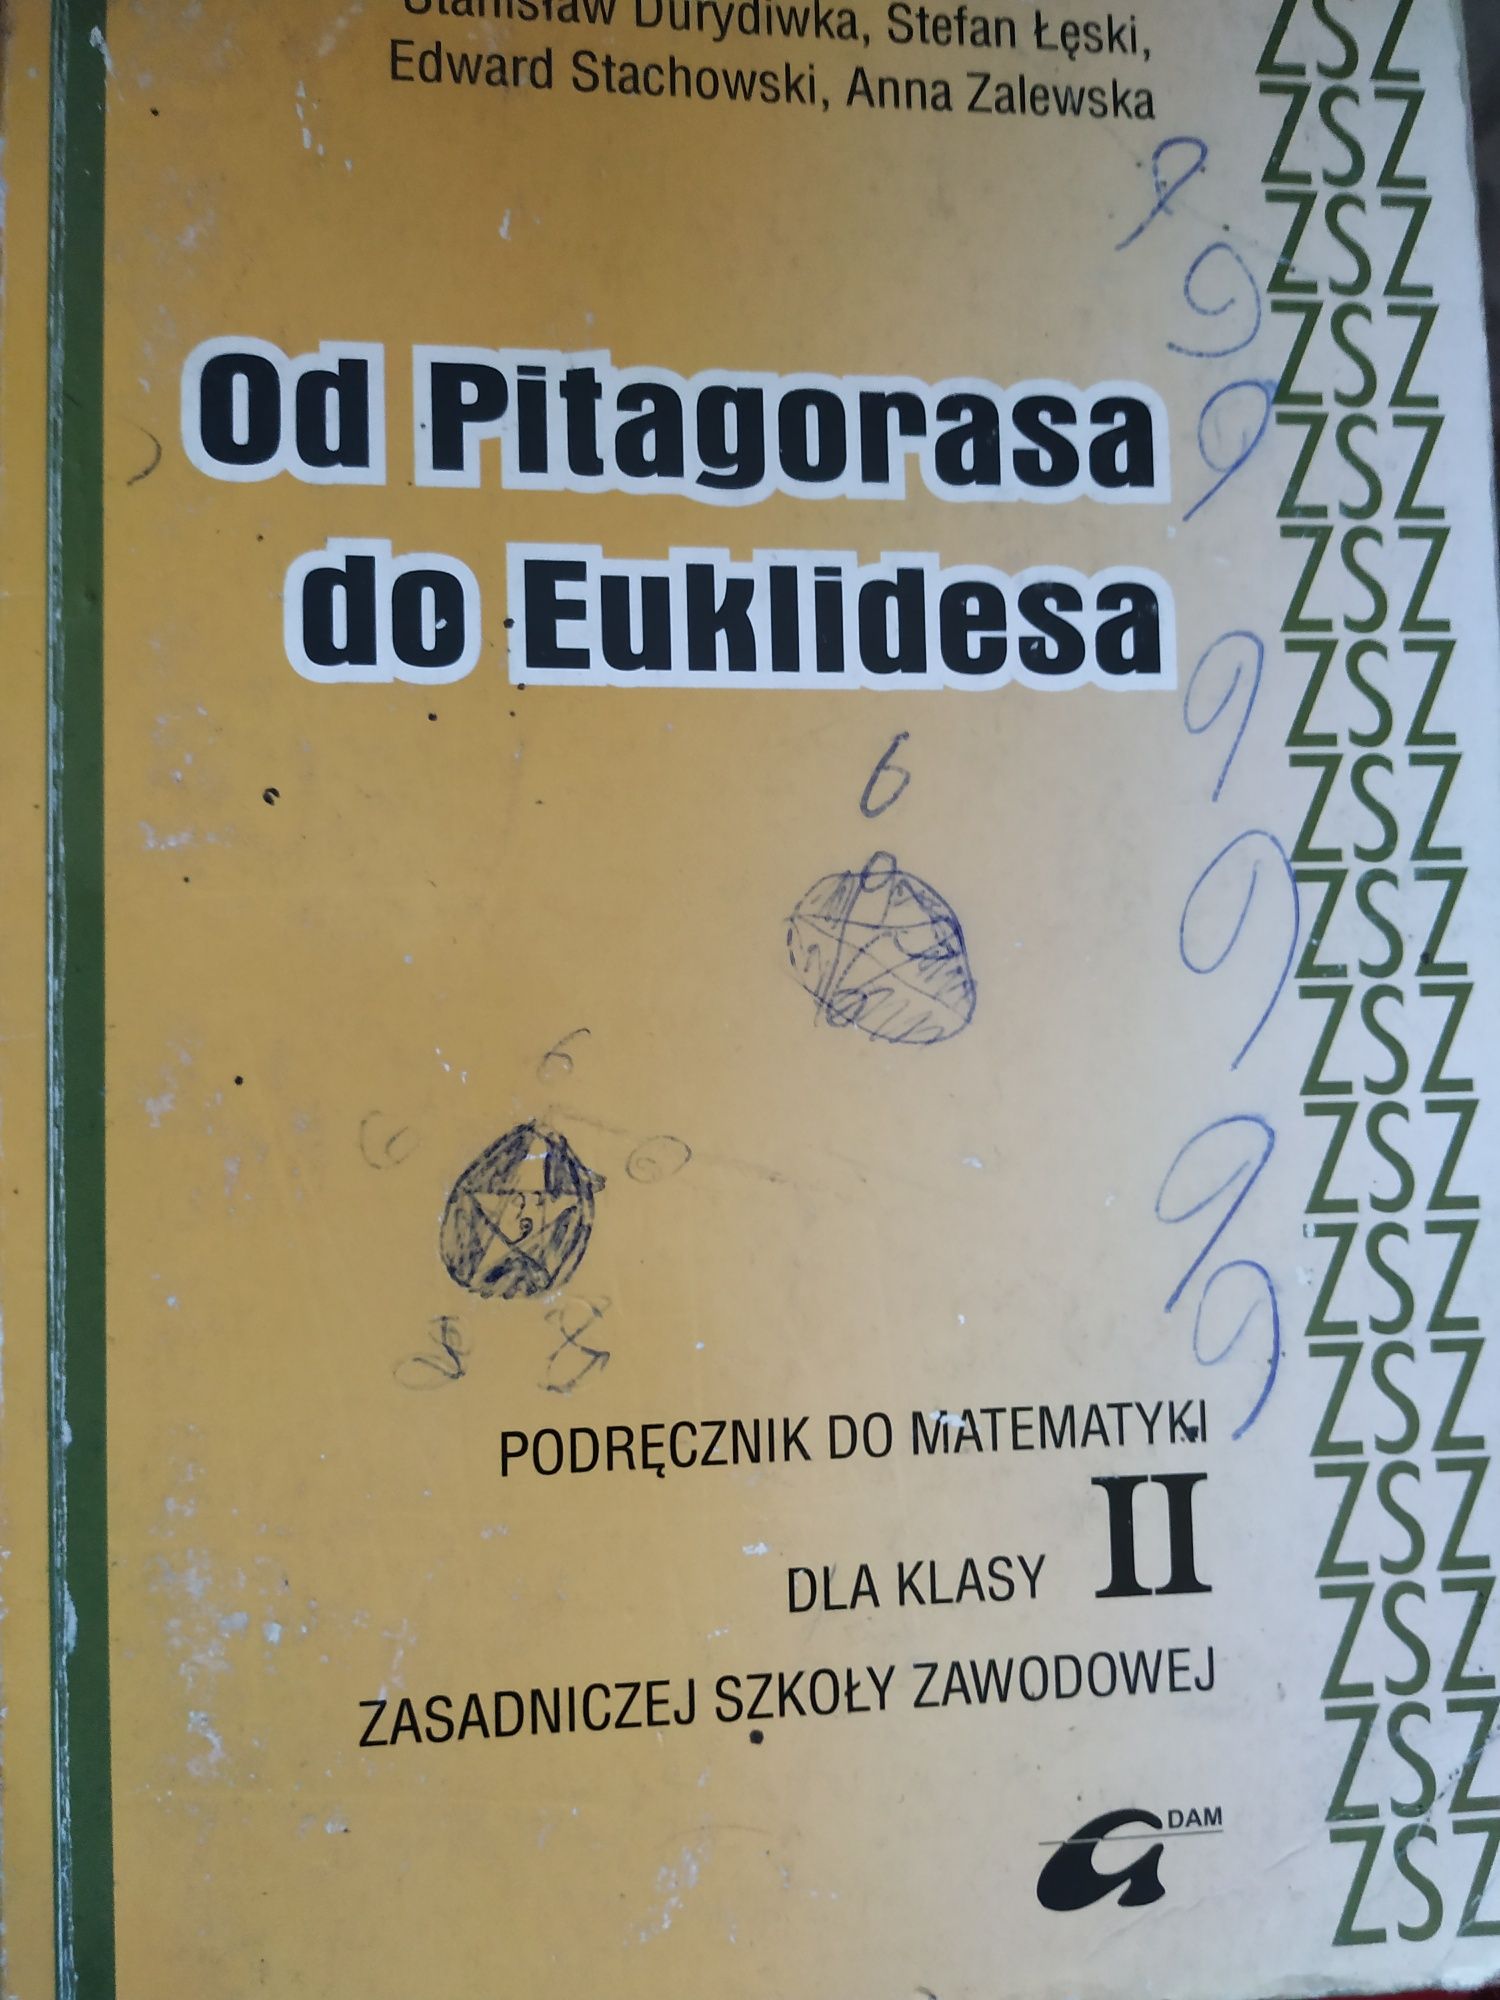 Od Pitagorasa do Euklidesa oraz Program lekcji wychowawczych Hamer